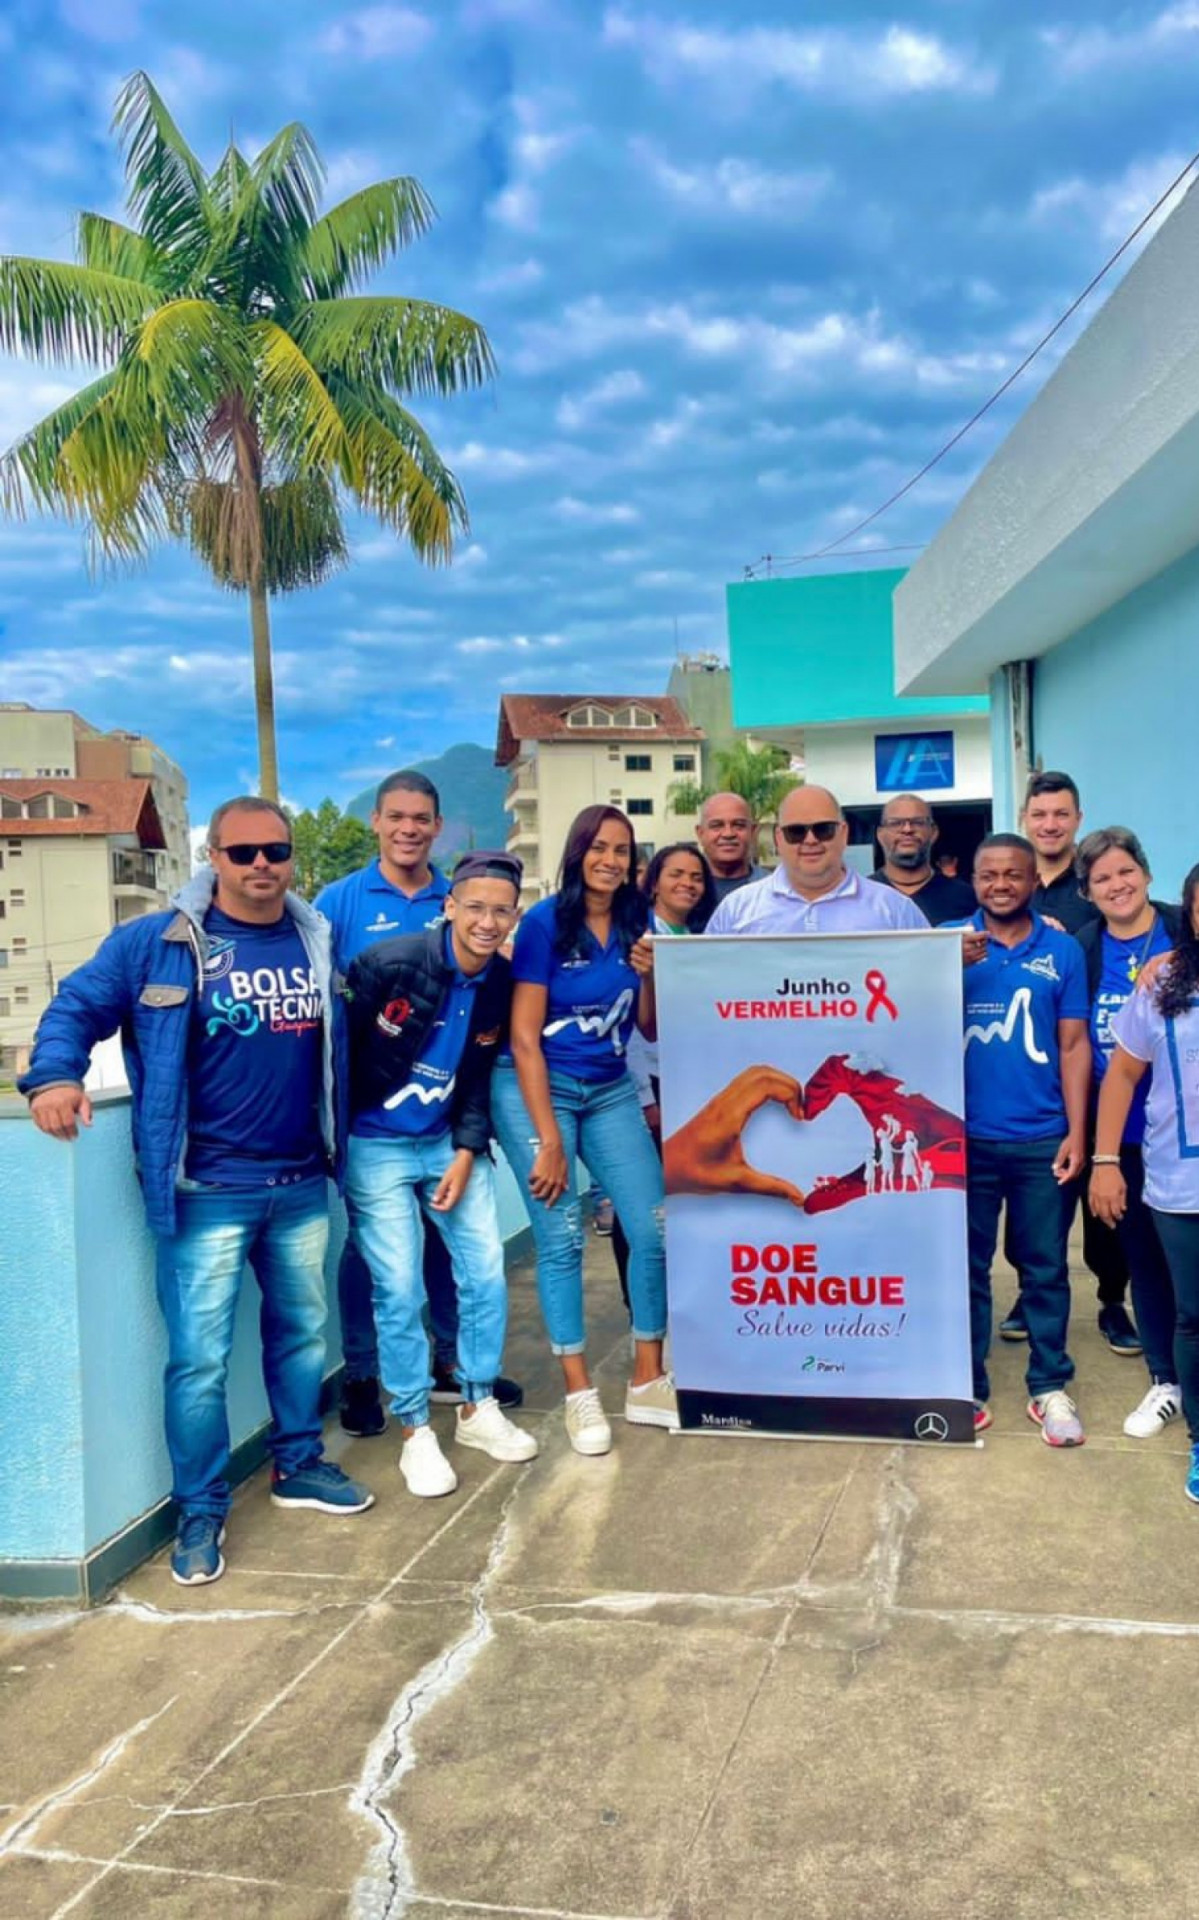 A campanha de doação de sangue em Guapimirim mobilizou funcionários e moradores - Secretaria de Esporte e Lazer de Guapimirim - Imagem cedida ao DIA